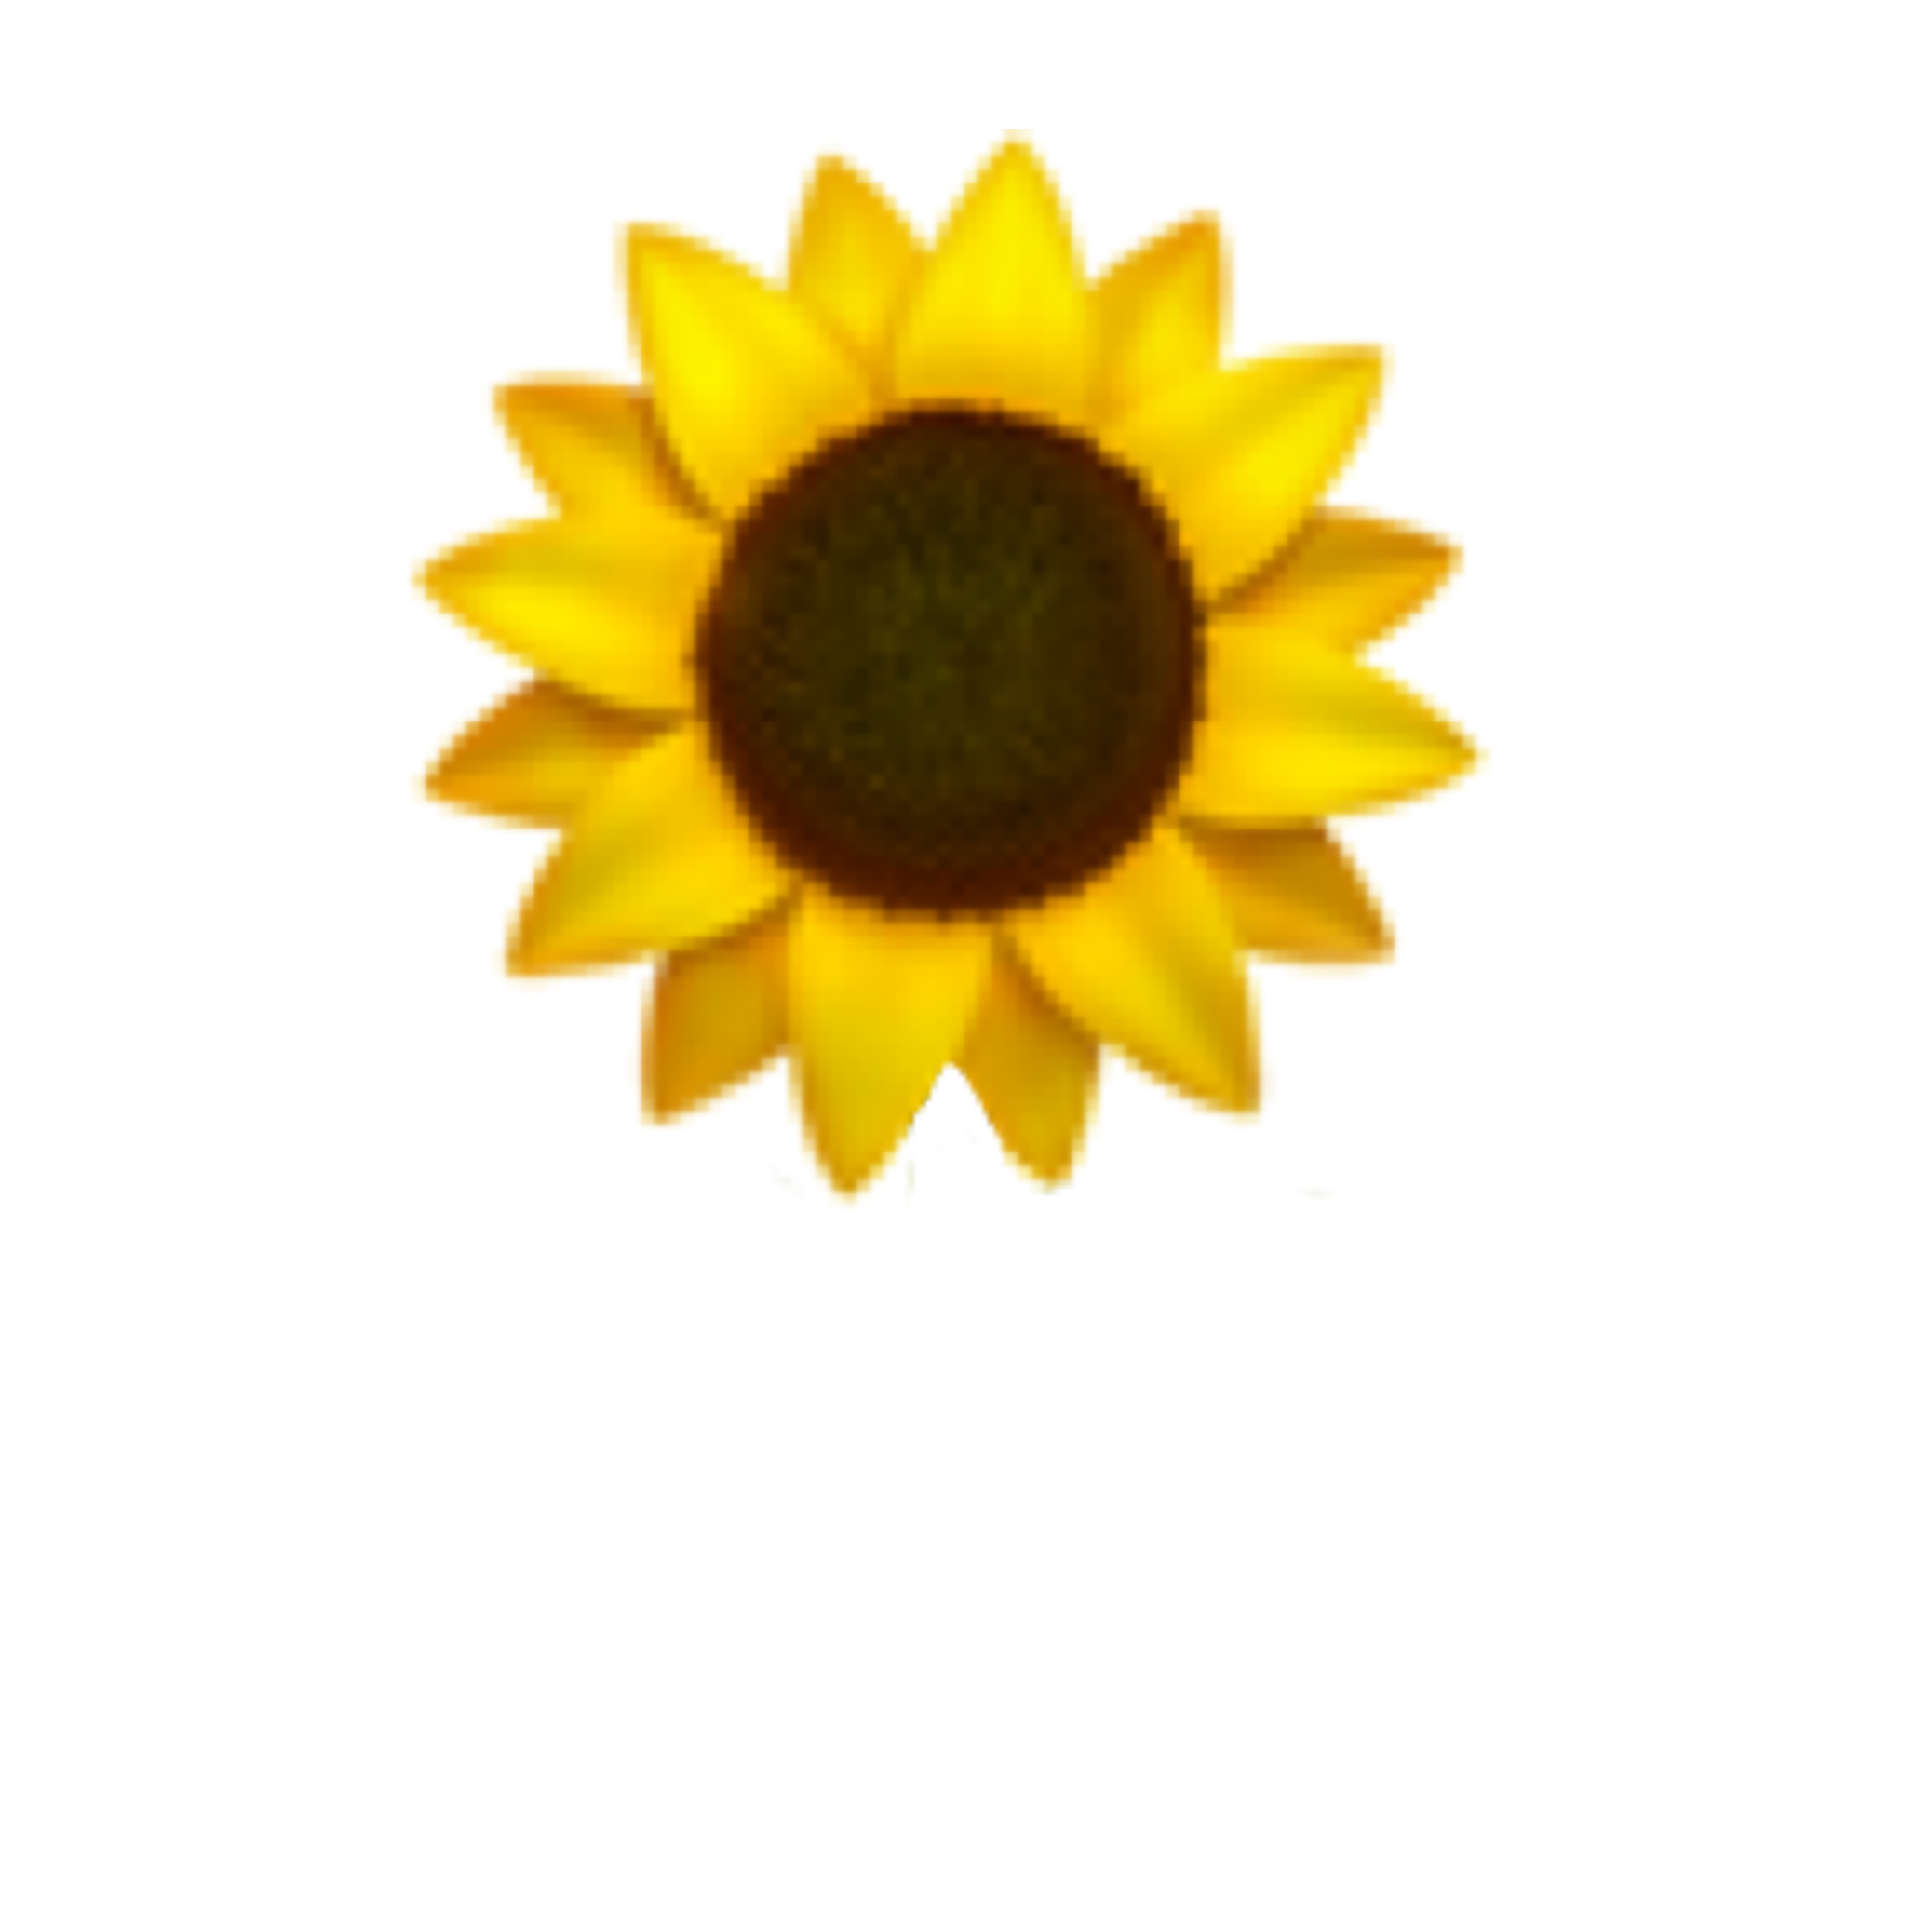  sunflower emoji   freetoedit Sticker by Dex